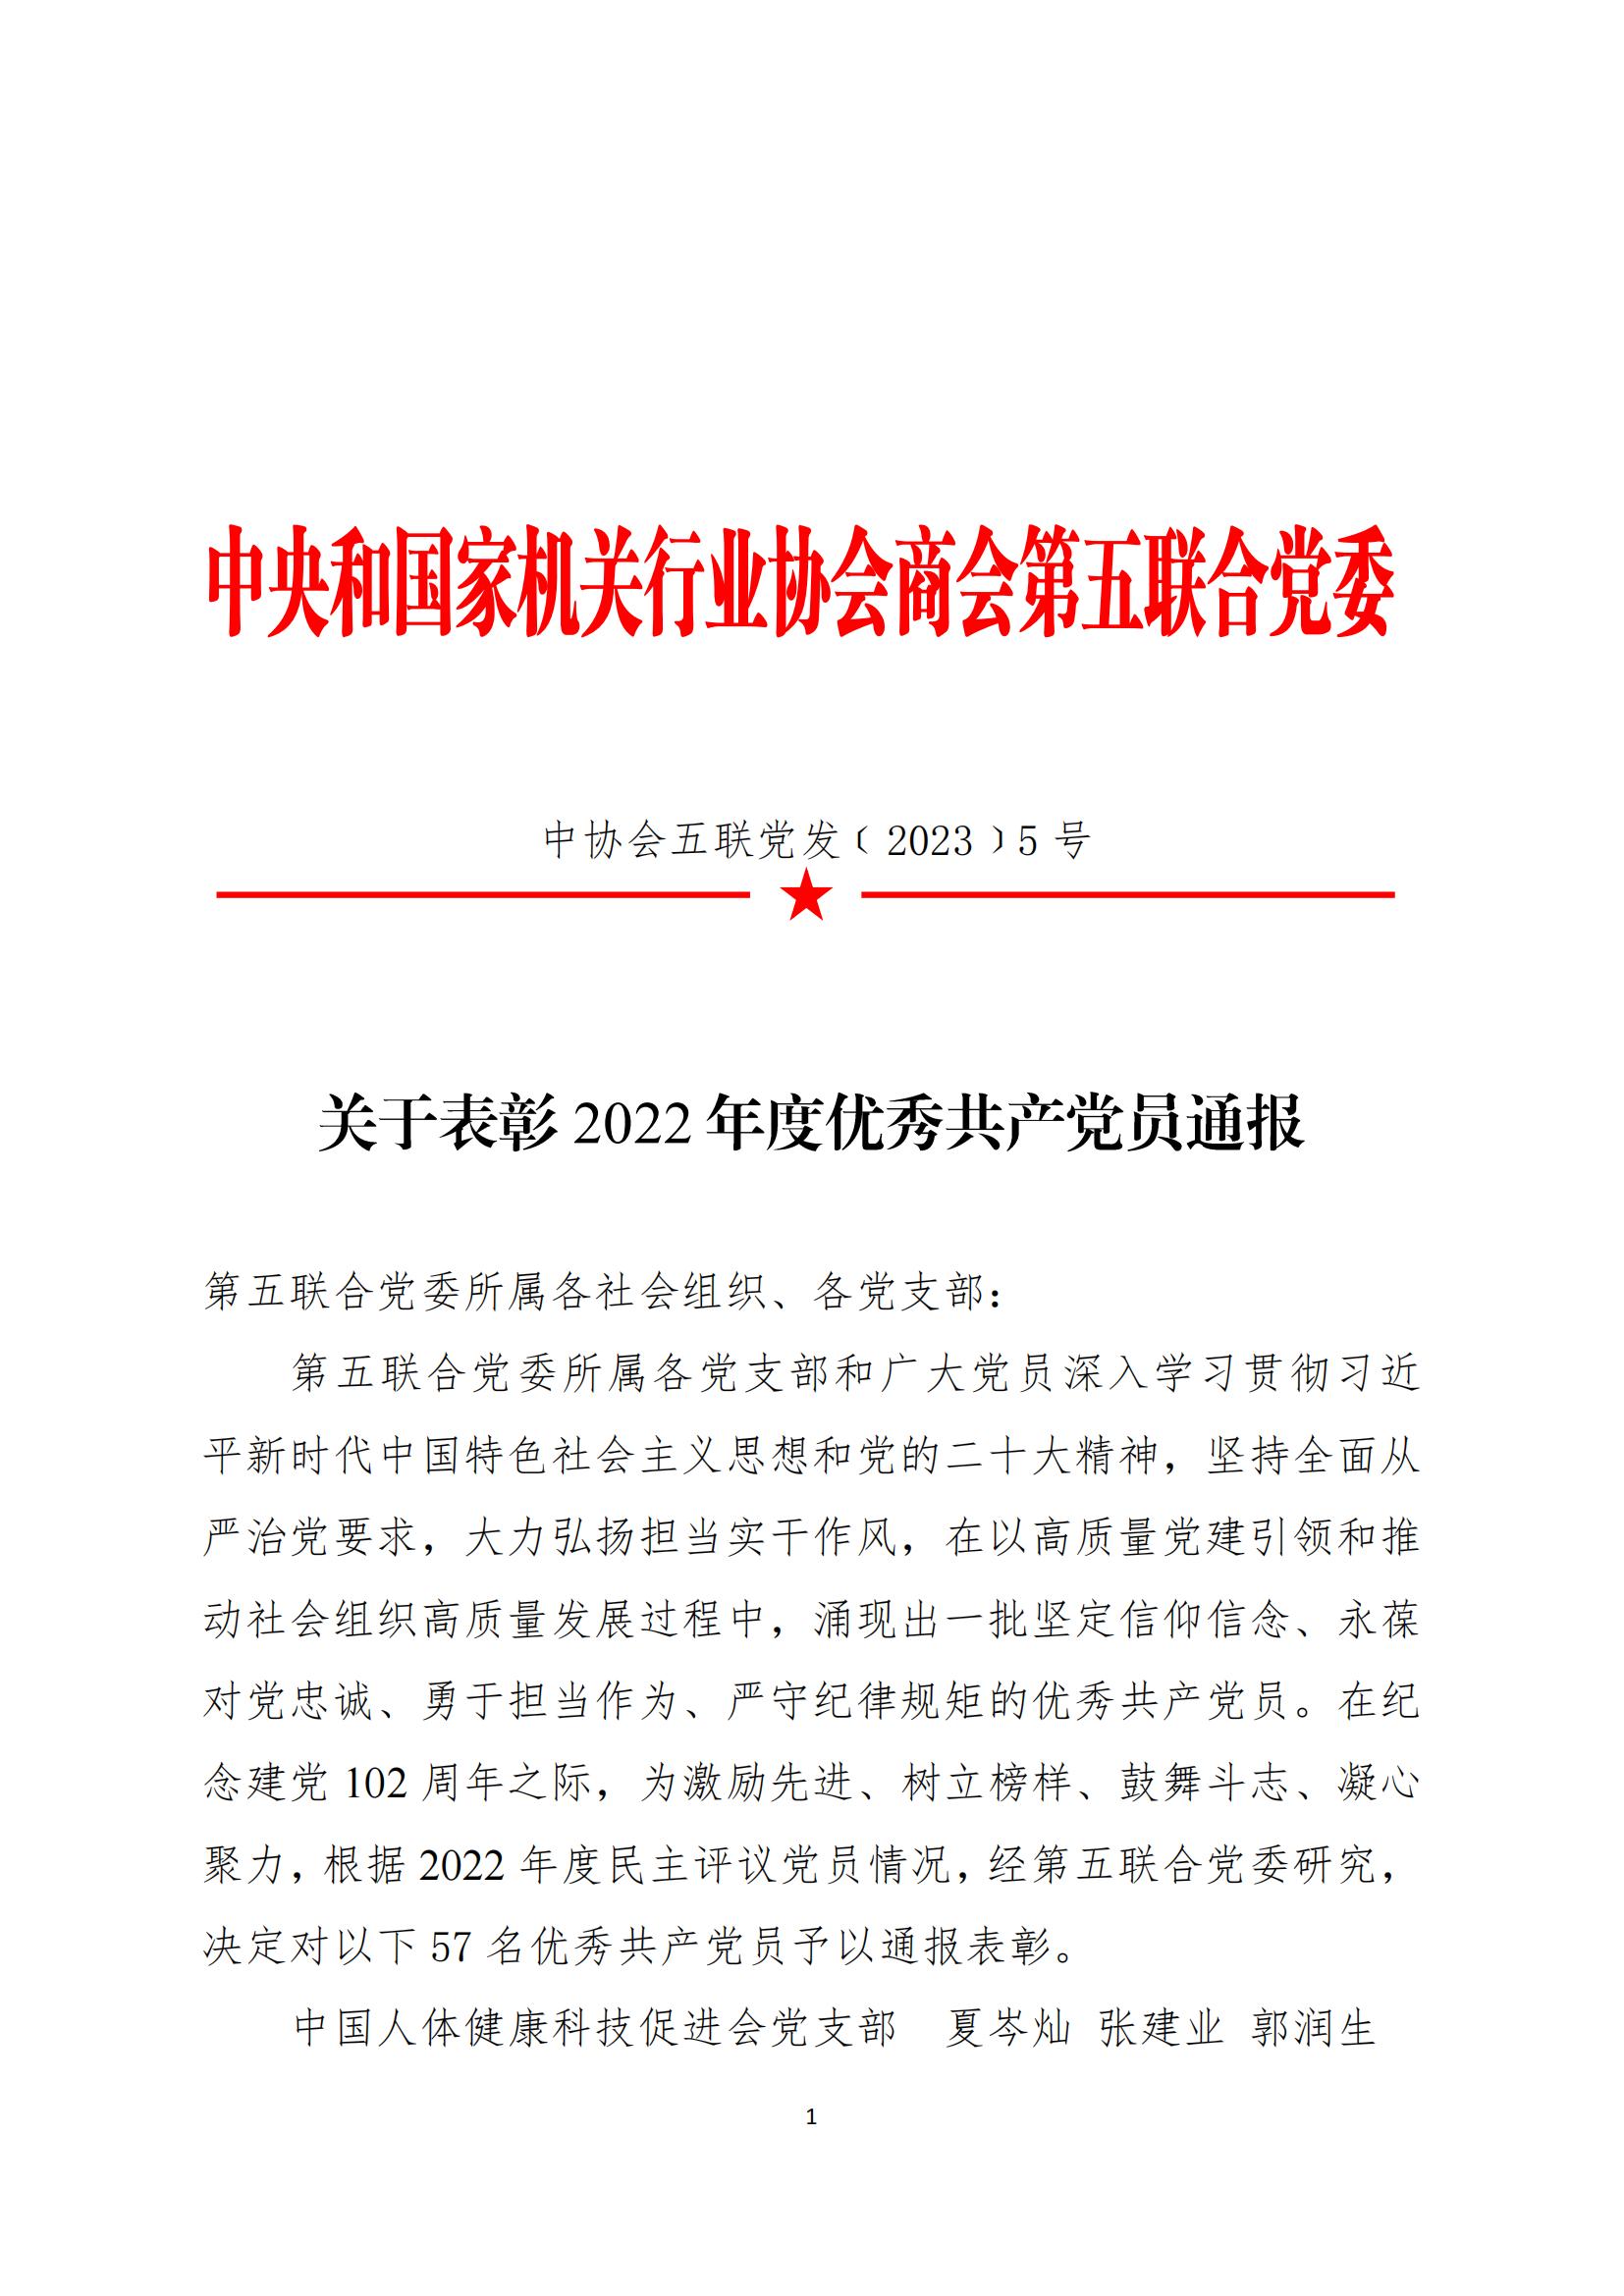 20230628关于表彰2022年度优秀共产党员通报_00.jpg